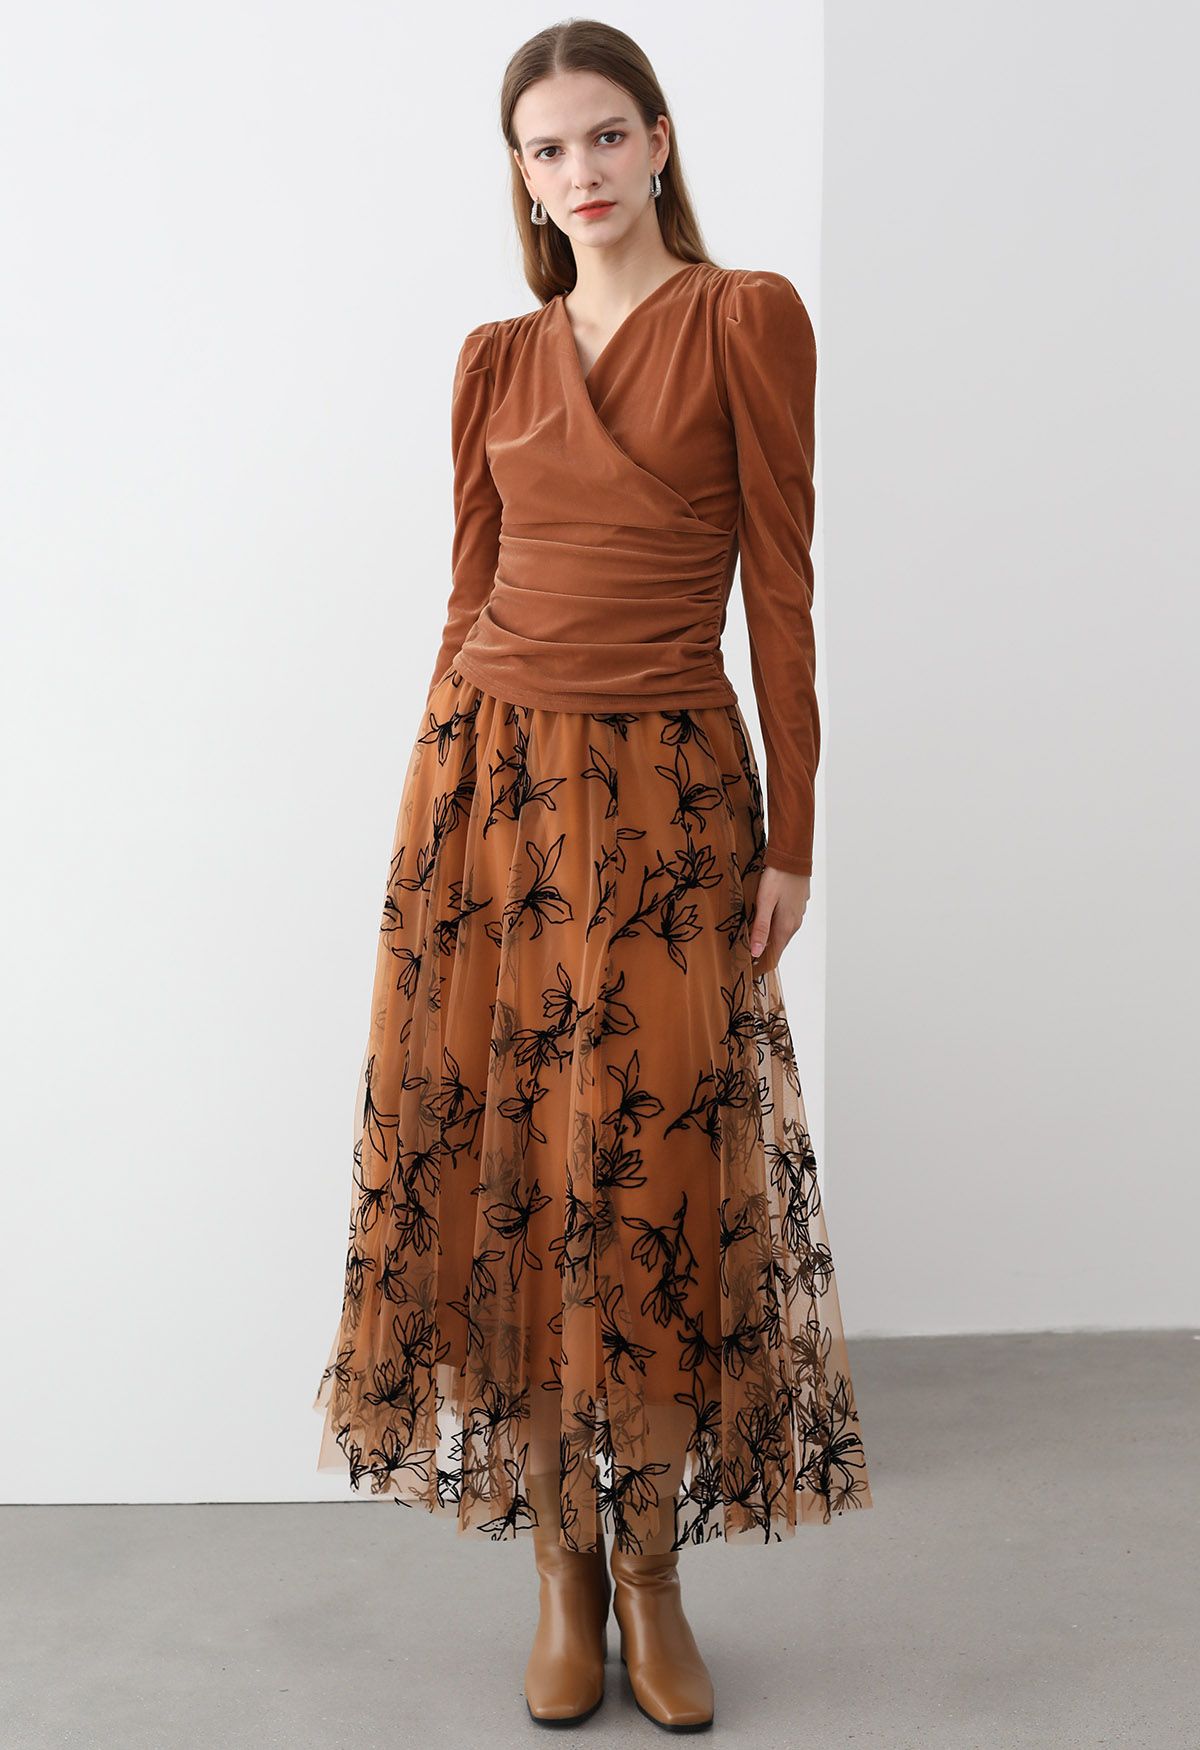 Velvet Magnolia Double-Layered Mesh Maxi Skirt in Orange